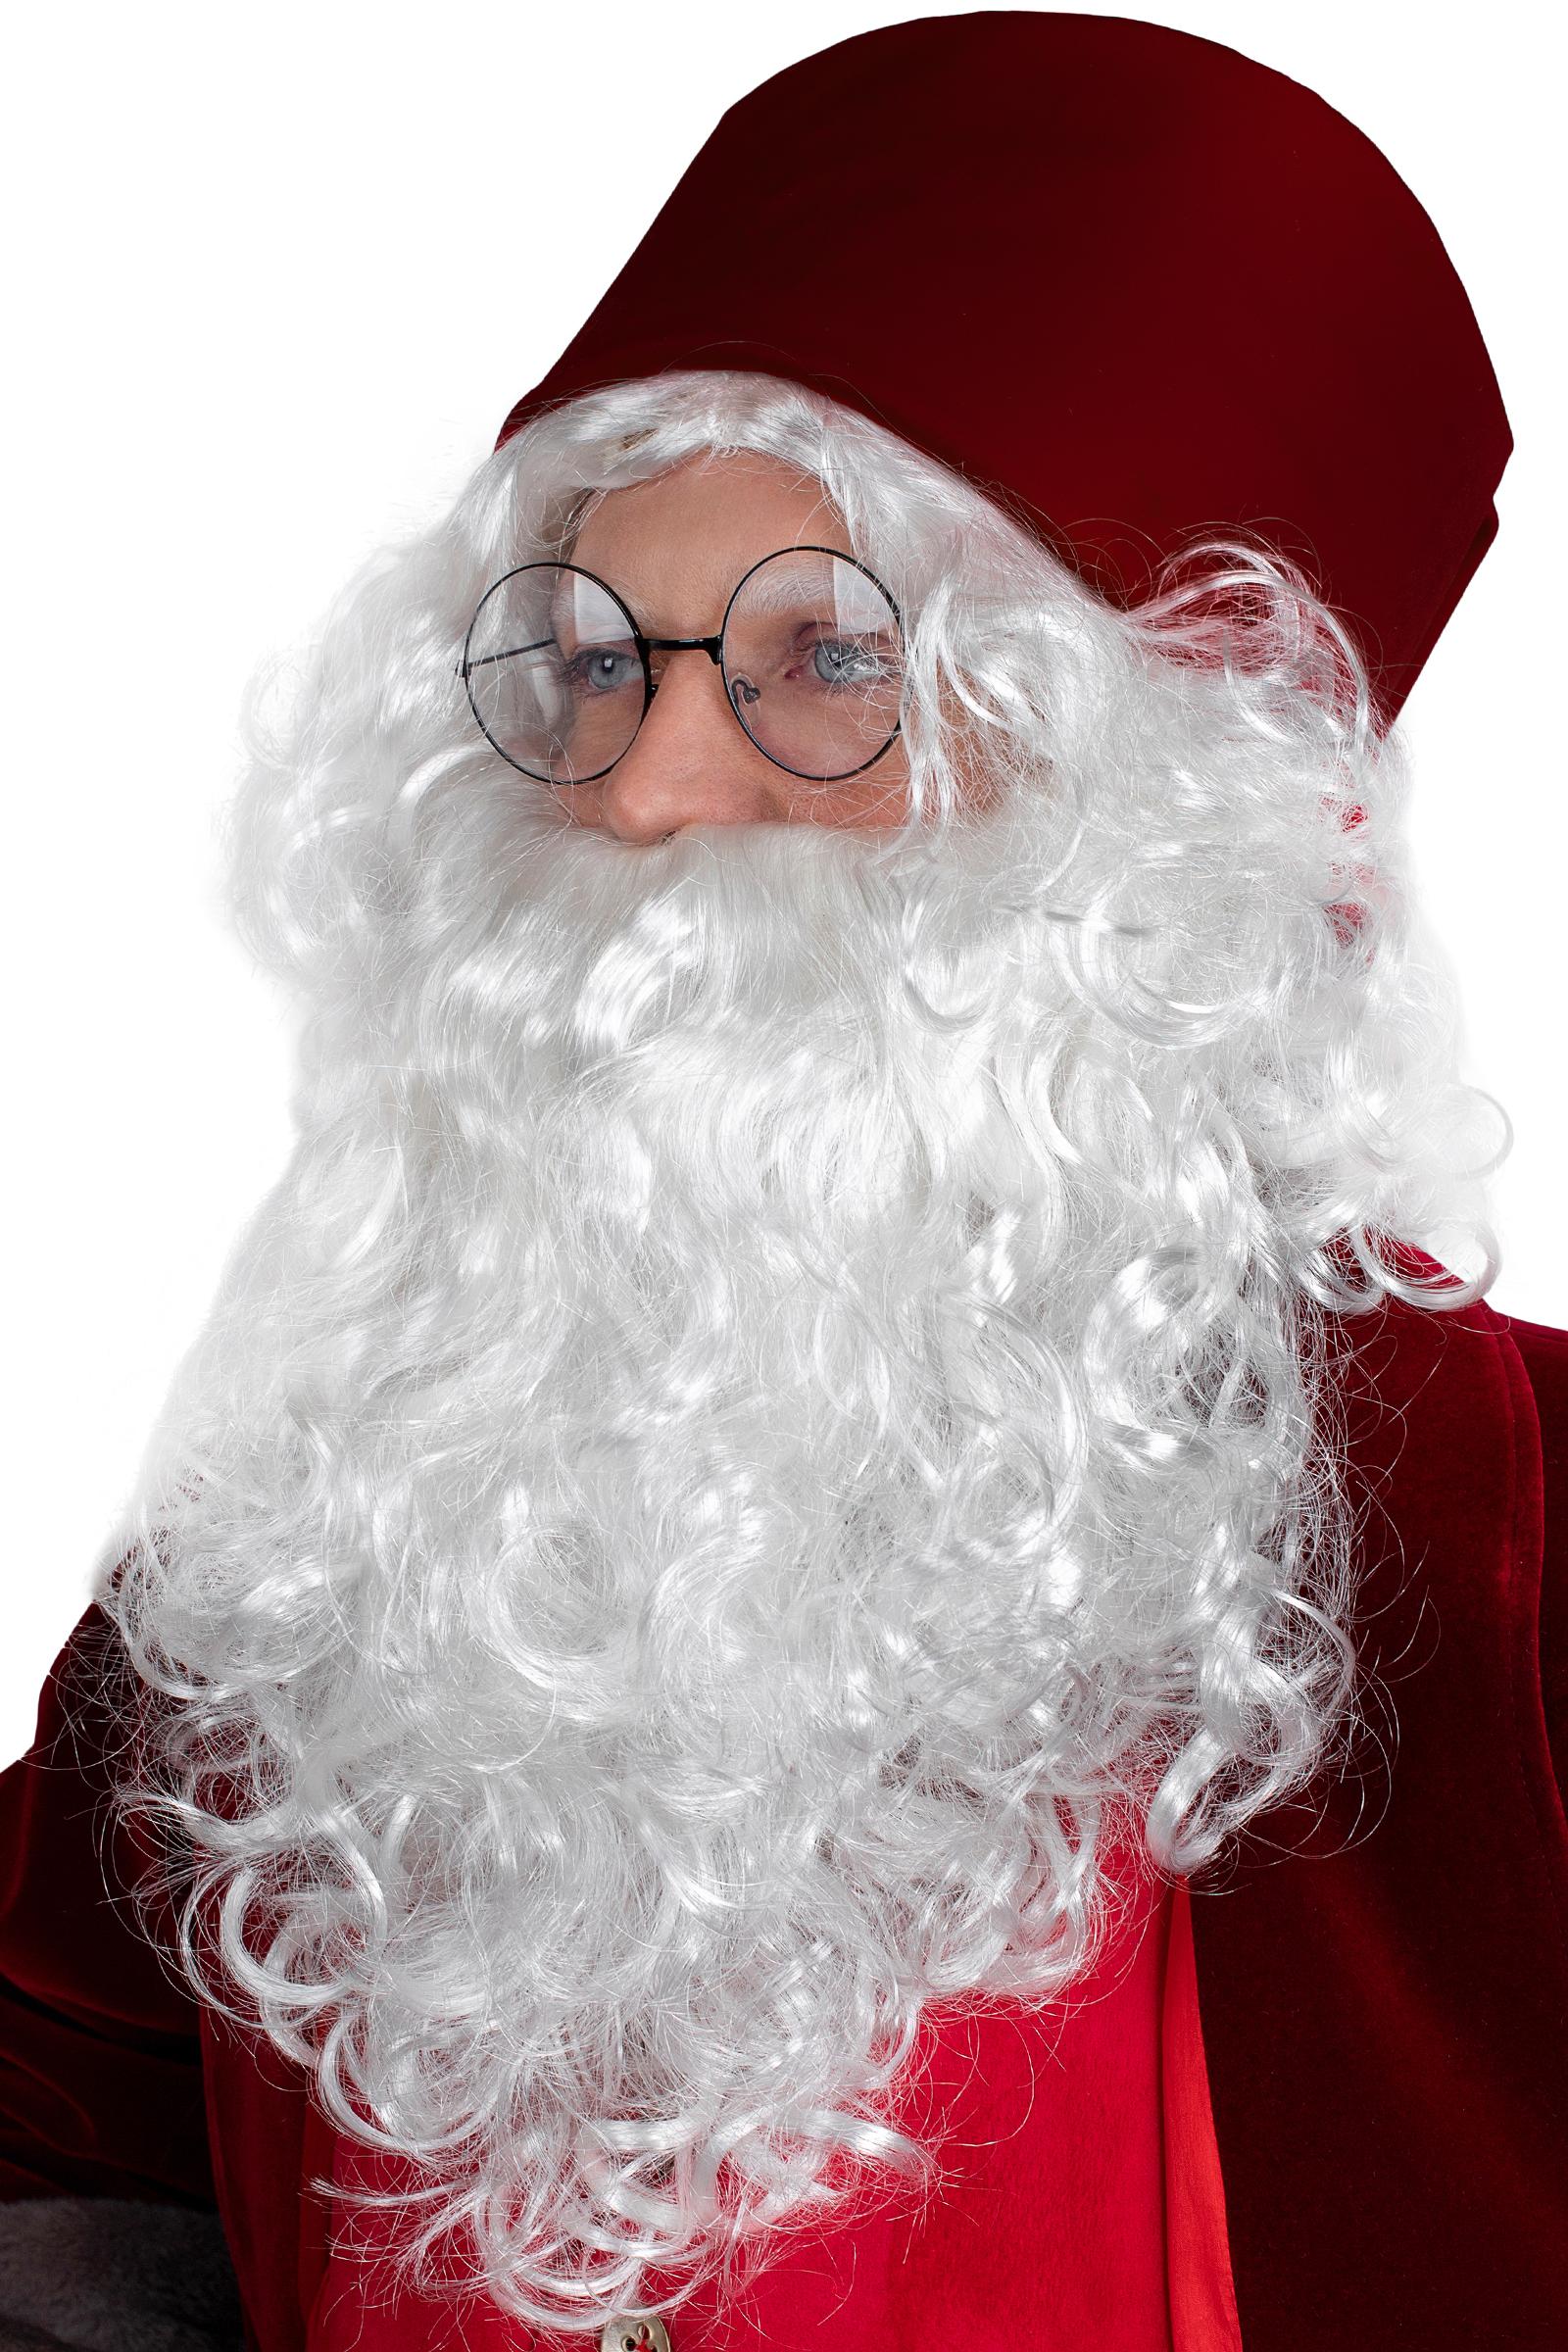 Как сшить костюм Санта Клауса?